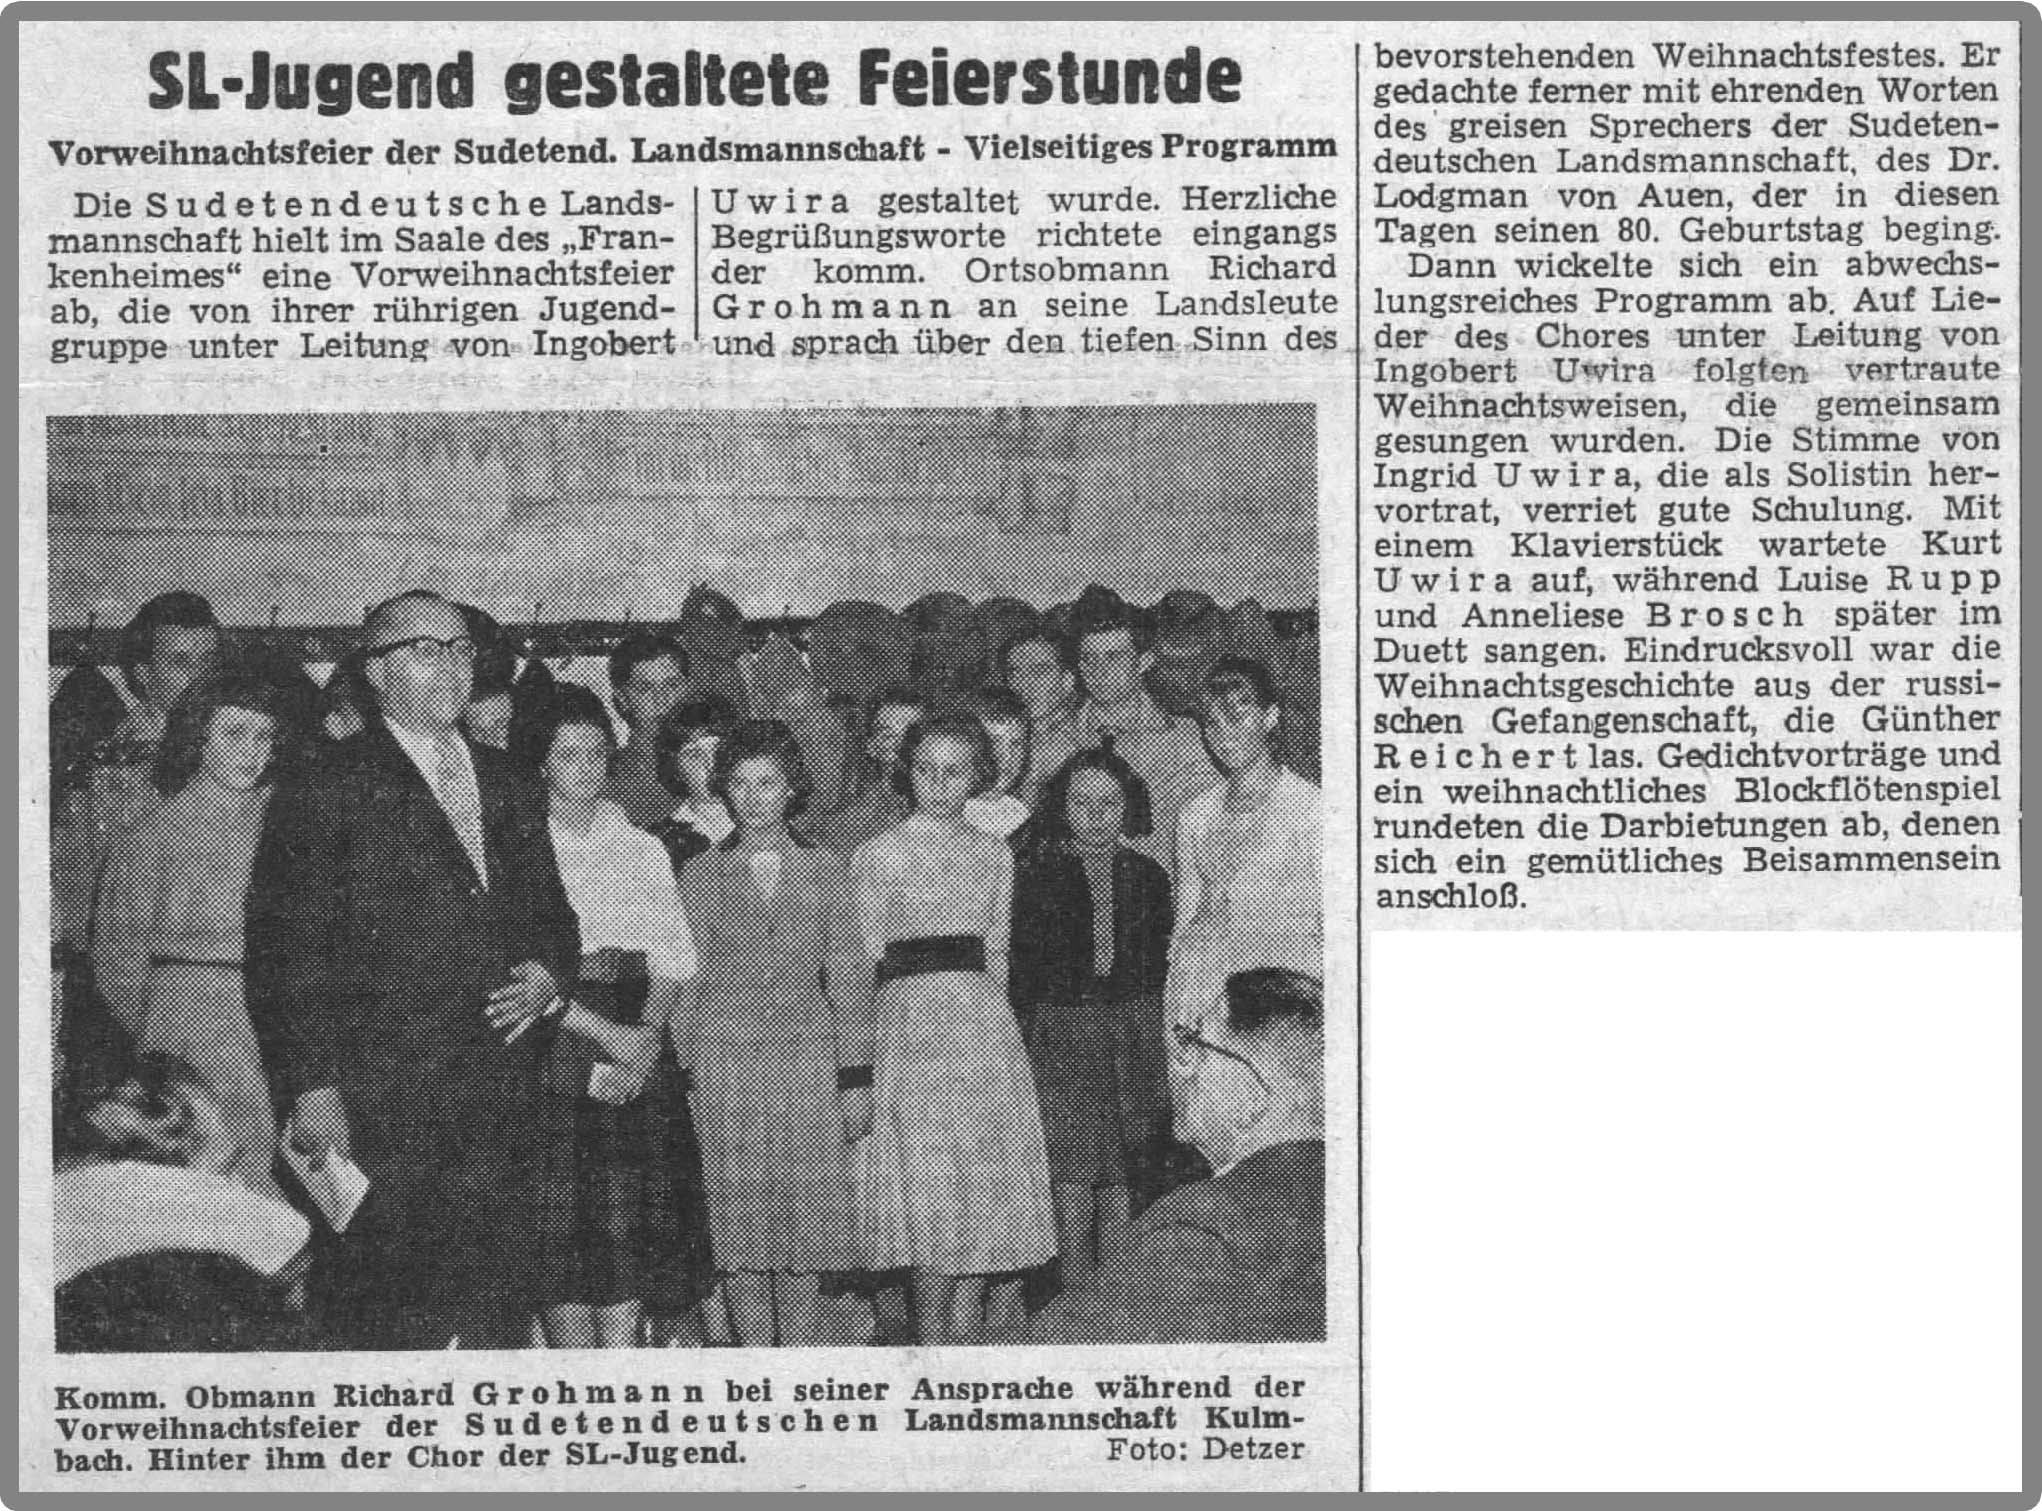 Frnkische Presse, 1957